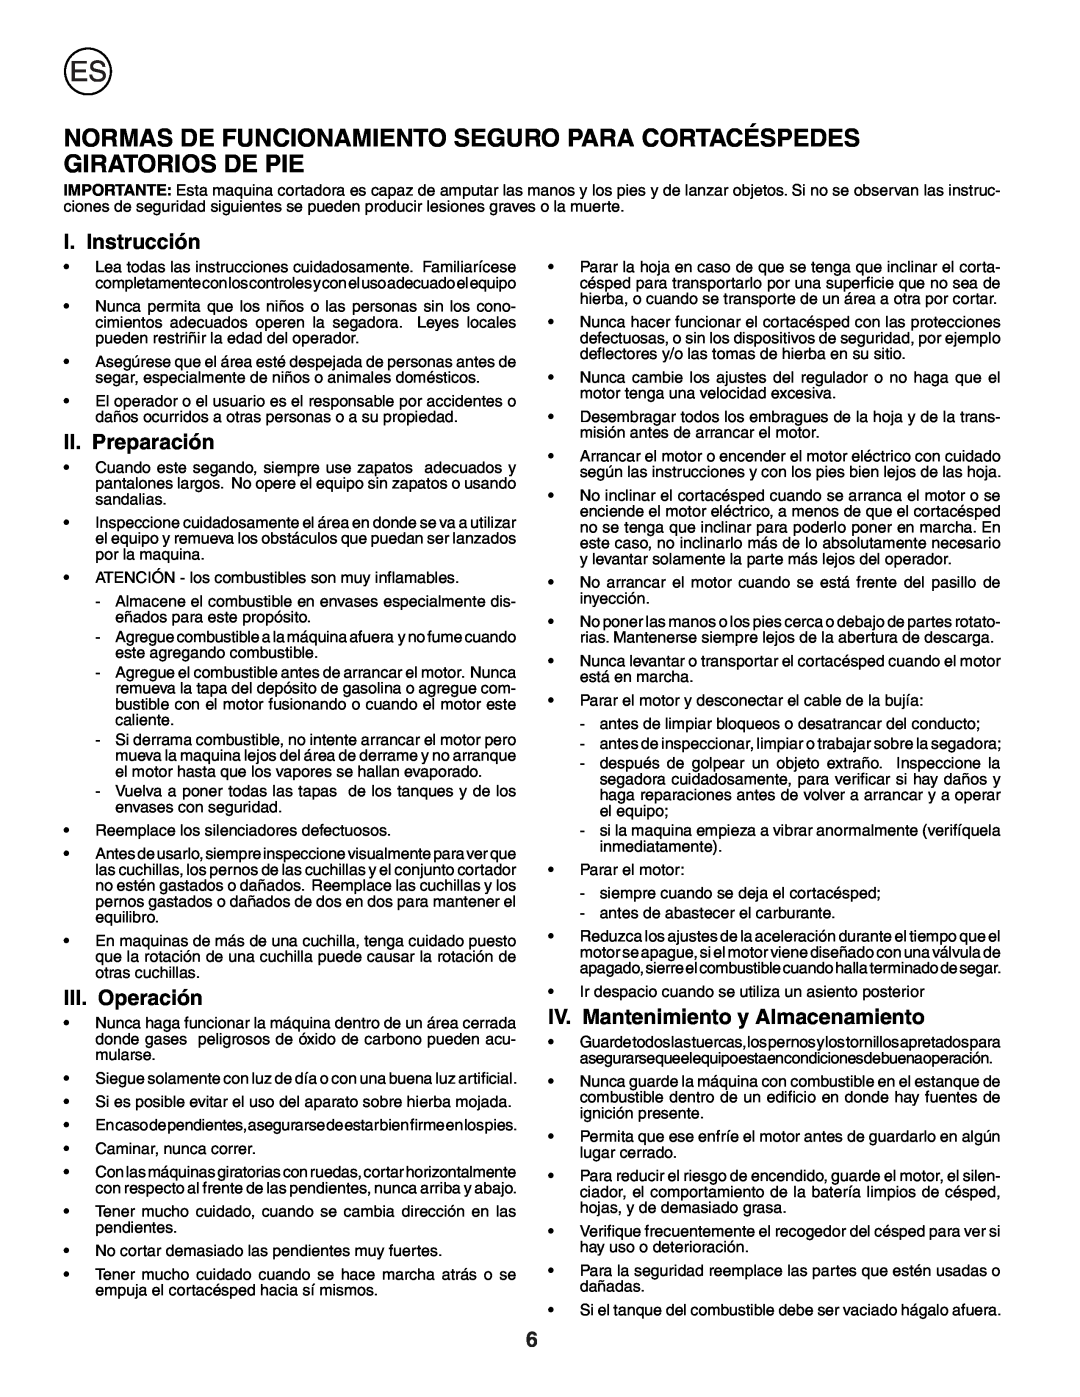 Husqvarna R53W Normas De Funcionamiento Seguro Para Cortacéspedes Giratorios De Pie, I. Instrucción, II. Preparación 